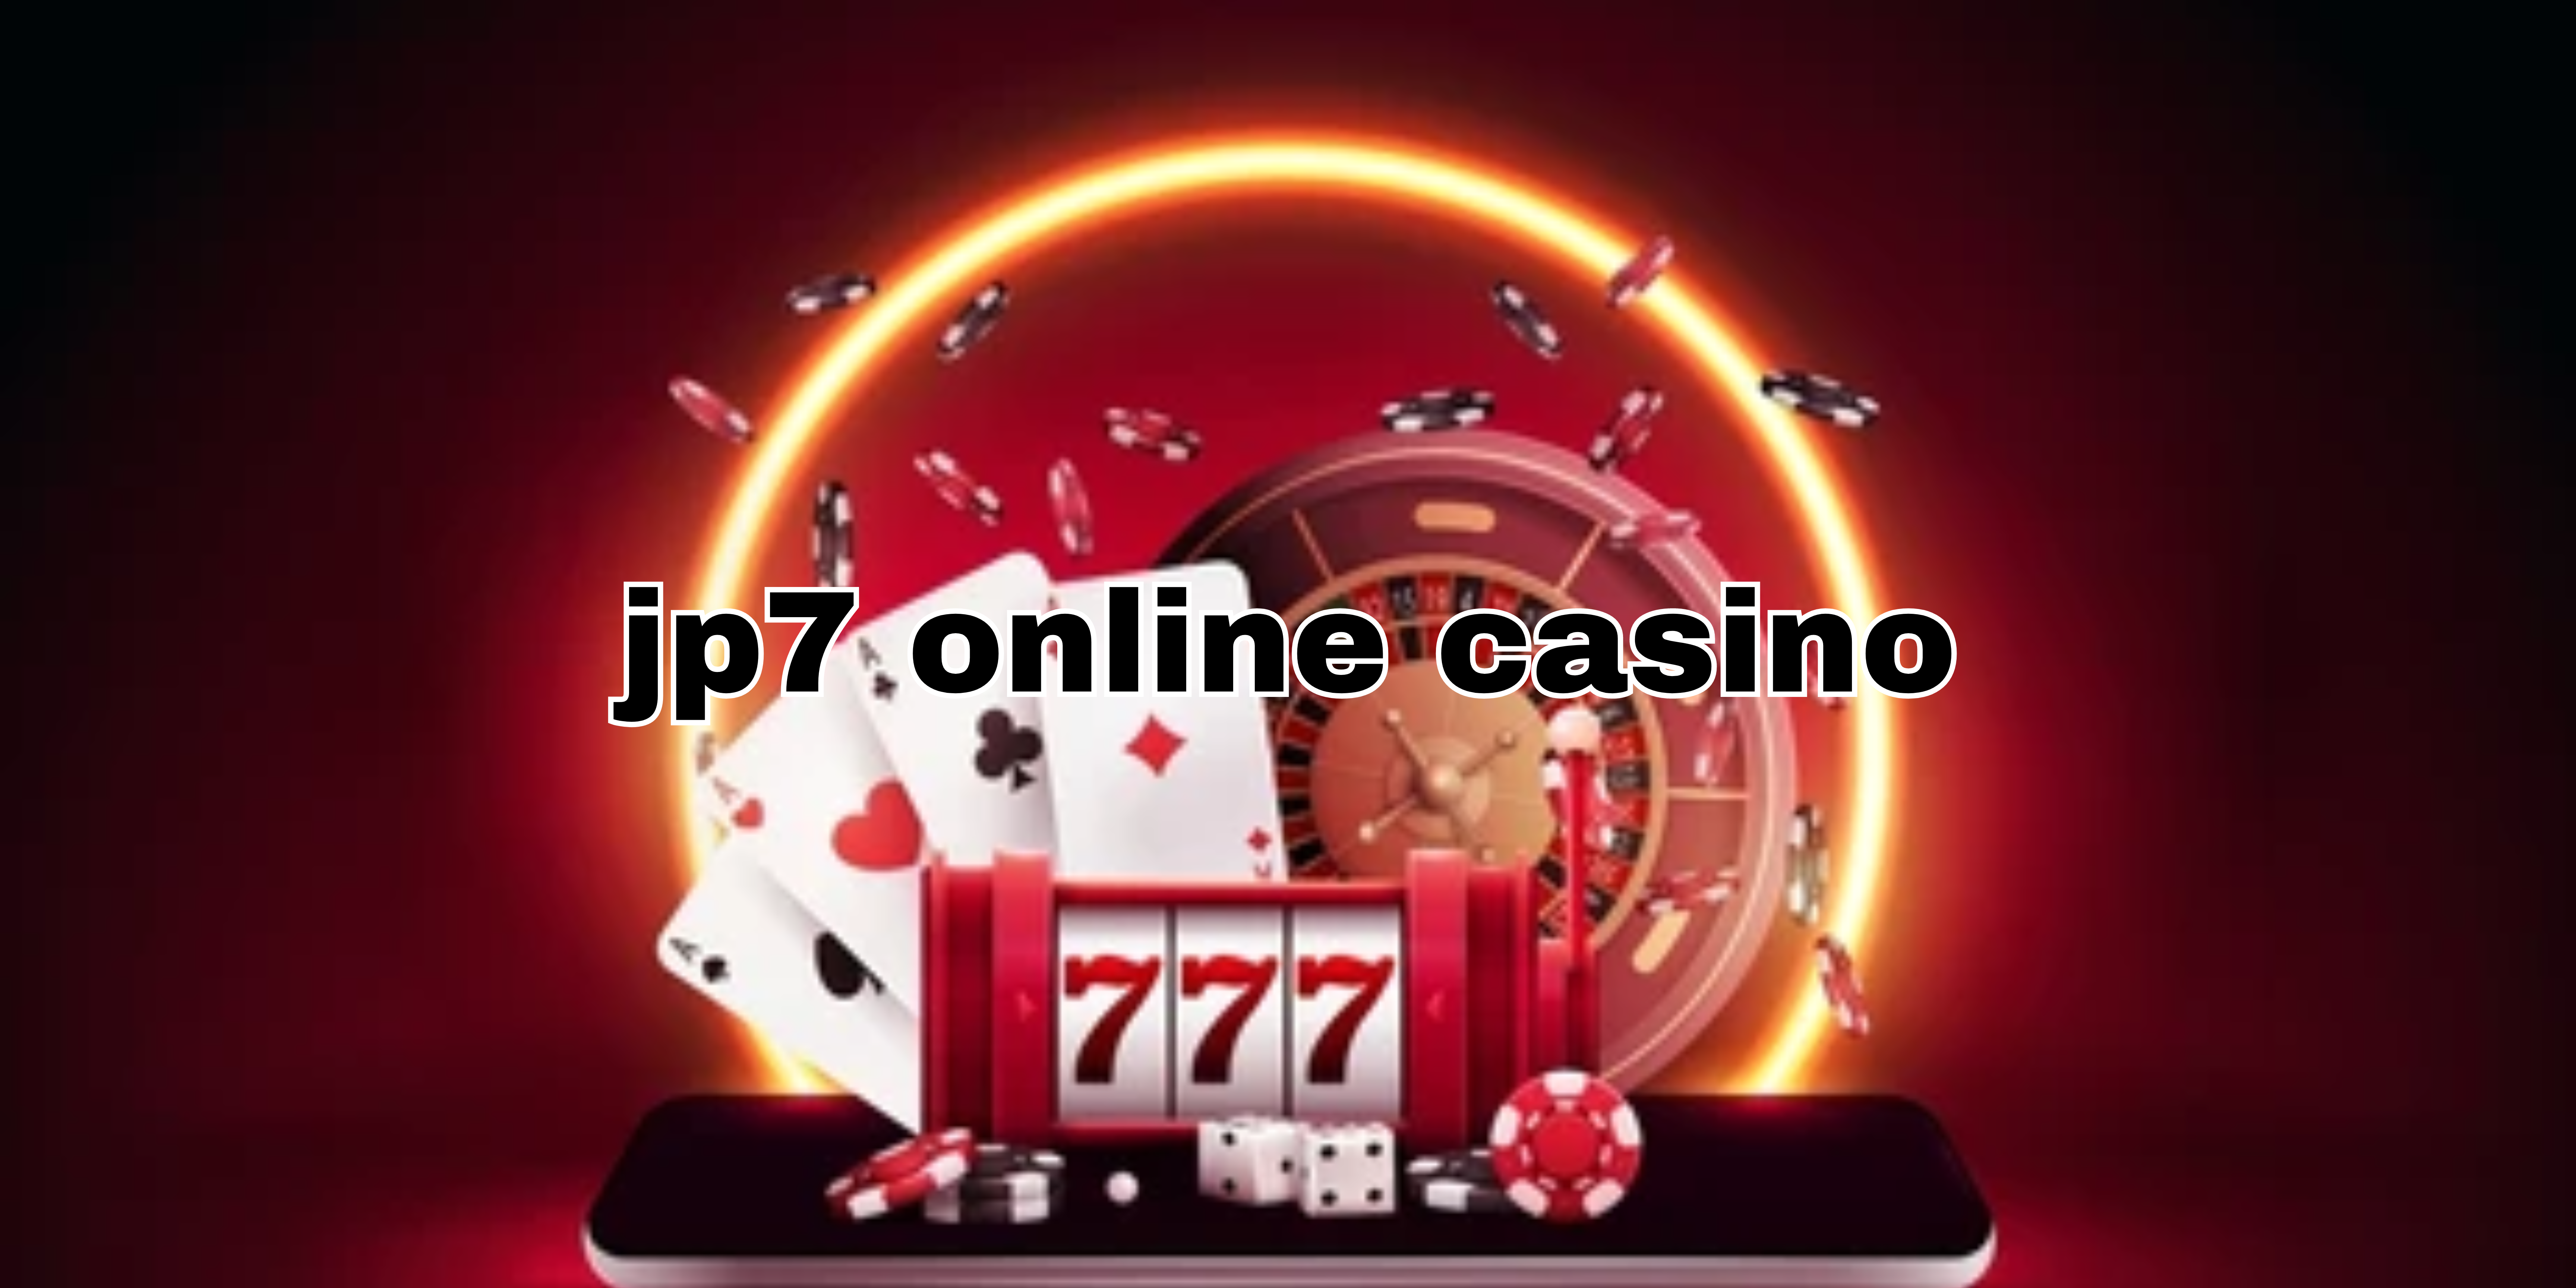 jp7 online casino